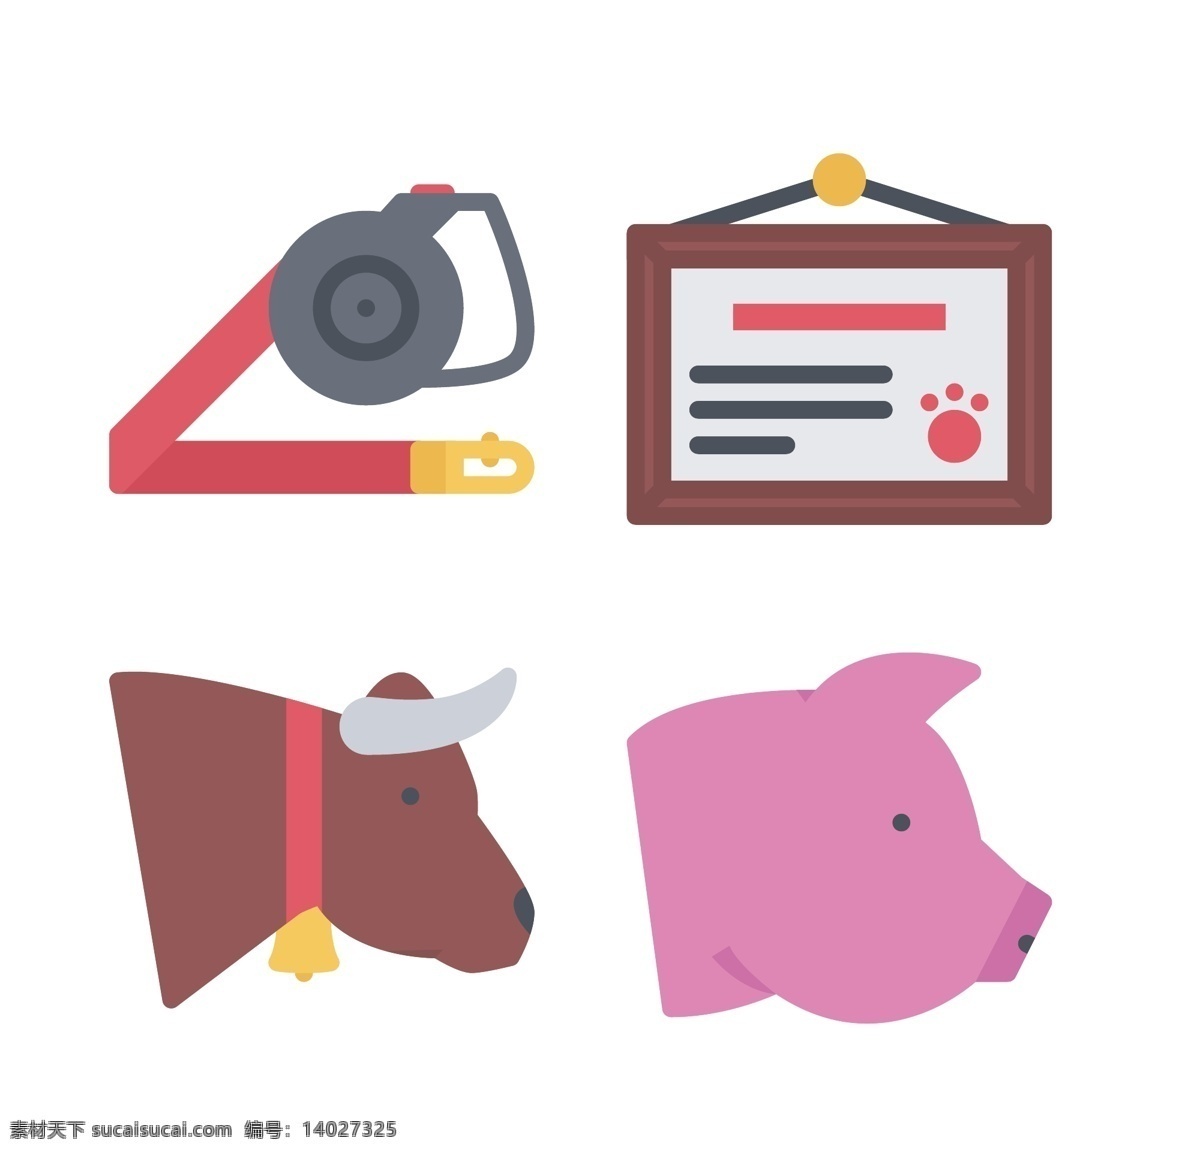 宠物 动物 icon 图标素材 图标 矢量 猪头 牛头 按钮图标 细线图标 标志图标 矢量素材